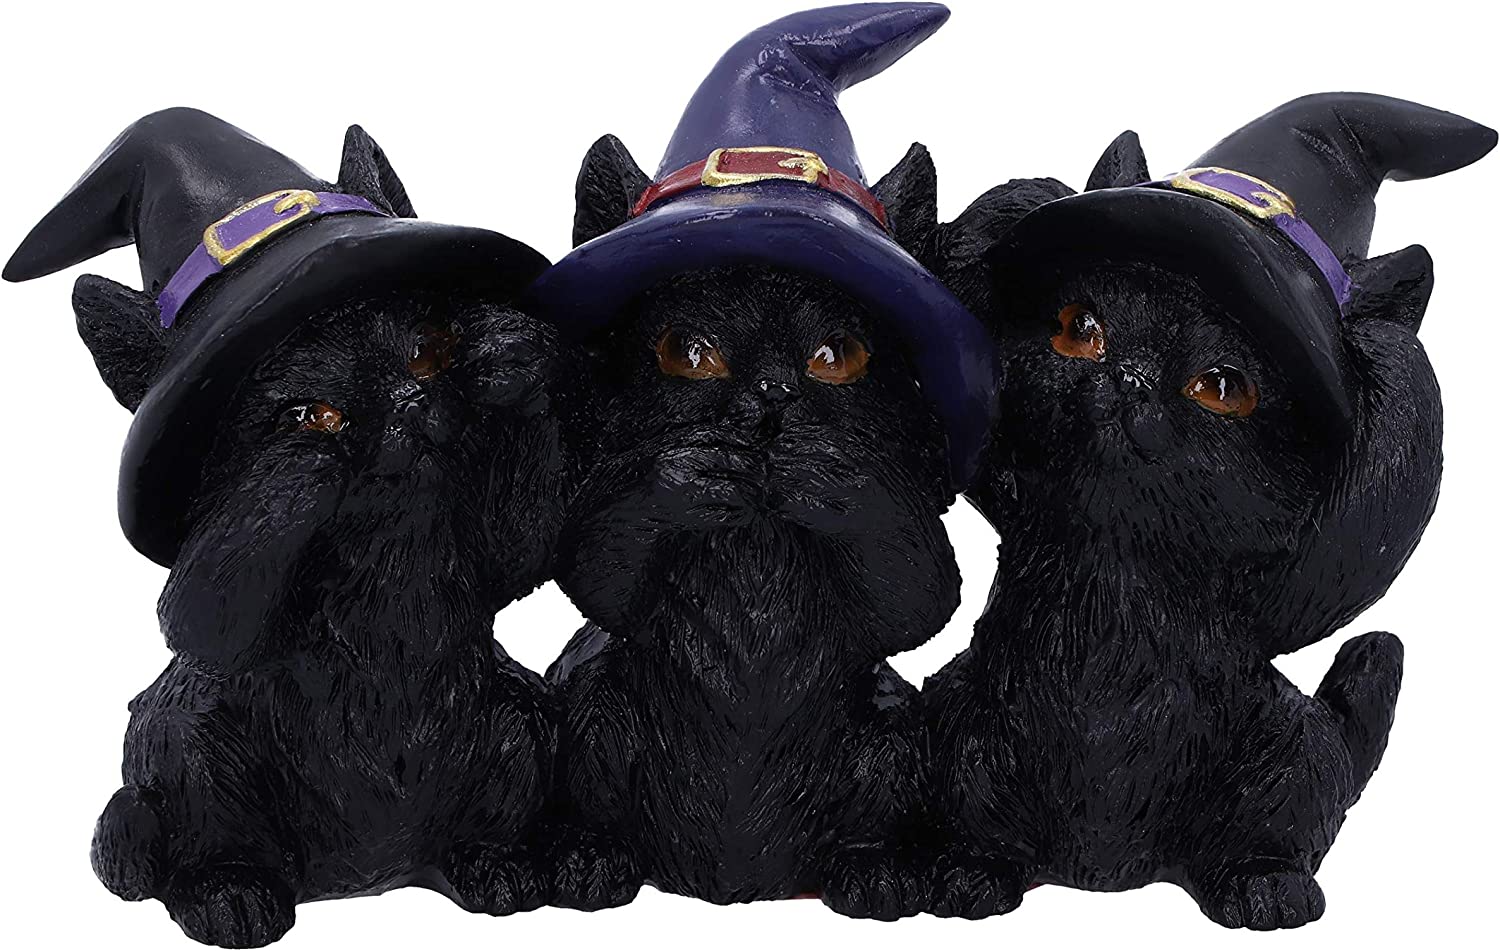 使い魔の賢い、3匹の黒猫（クロネコ）「見ざる聞かざる言わざる」三猿